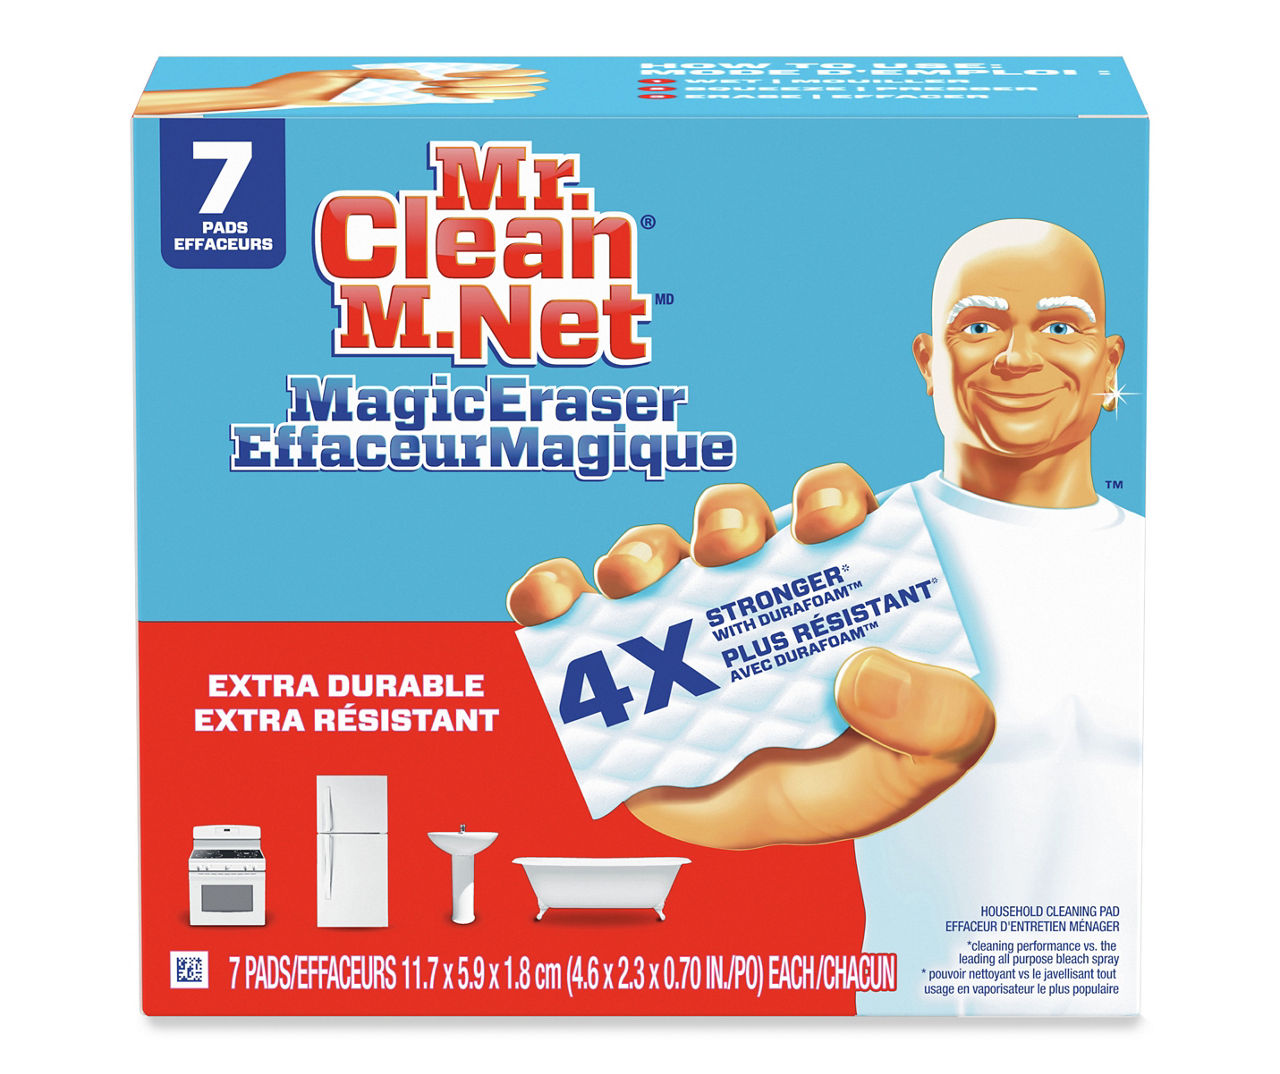 Tấm lau sạch đa năng Extra Durable của Mr. Clean là một sản phẩm tuyệt vời để giúp bạn loại bỏ các vết bẩn trên các bề mặt. Với khả năng kéo dài tuổi thọ của tấm lau, bạn sẽ có thể sử dụng chúng một cách tiết kiệm và hiệu quả.